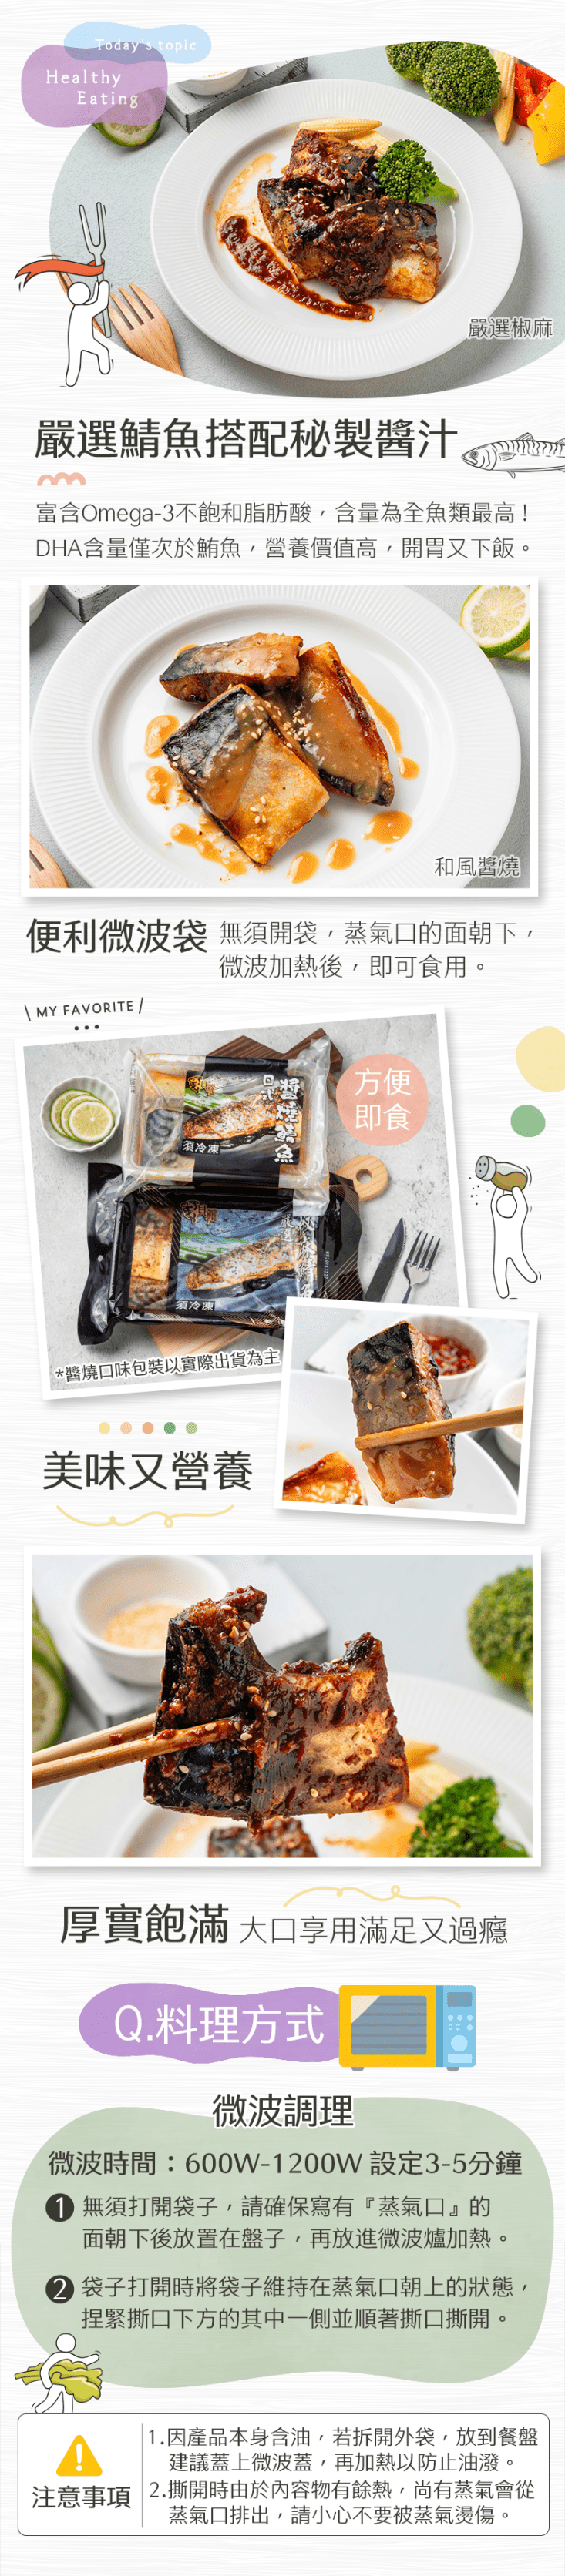 【生活好漁】嚴選川味椒麻 和風醬燒鯖魚即食調理包(200gx1盒)